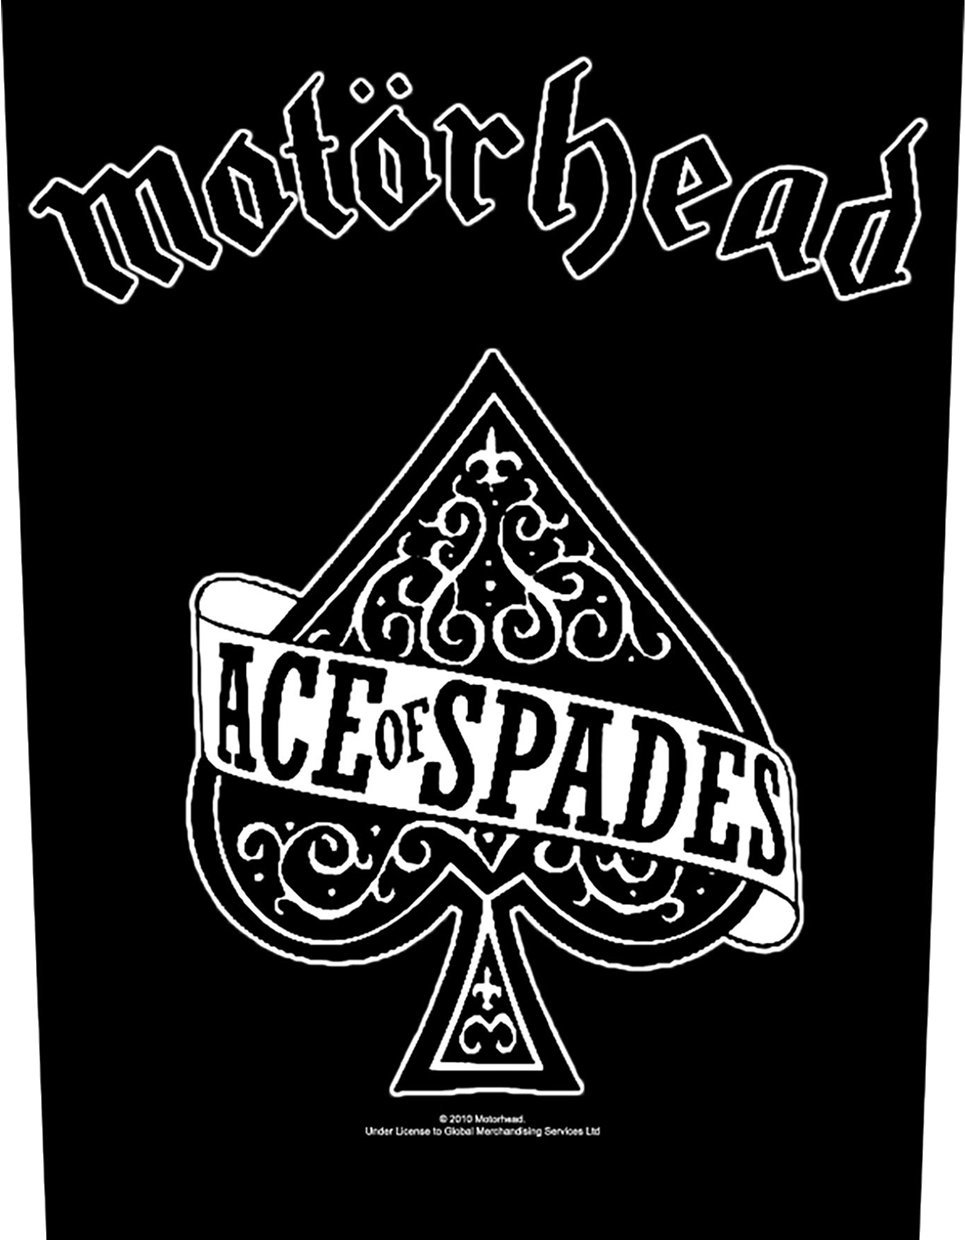 Patch Motörhead Ace Of Spades Patch